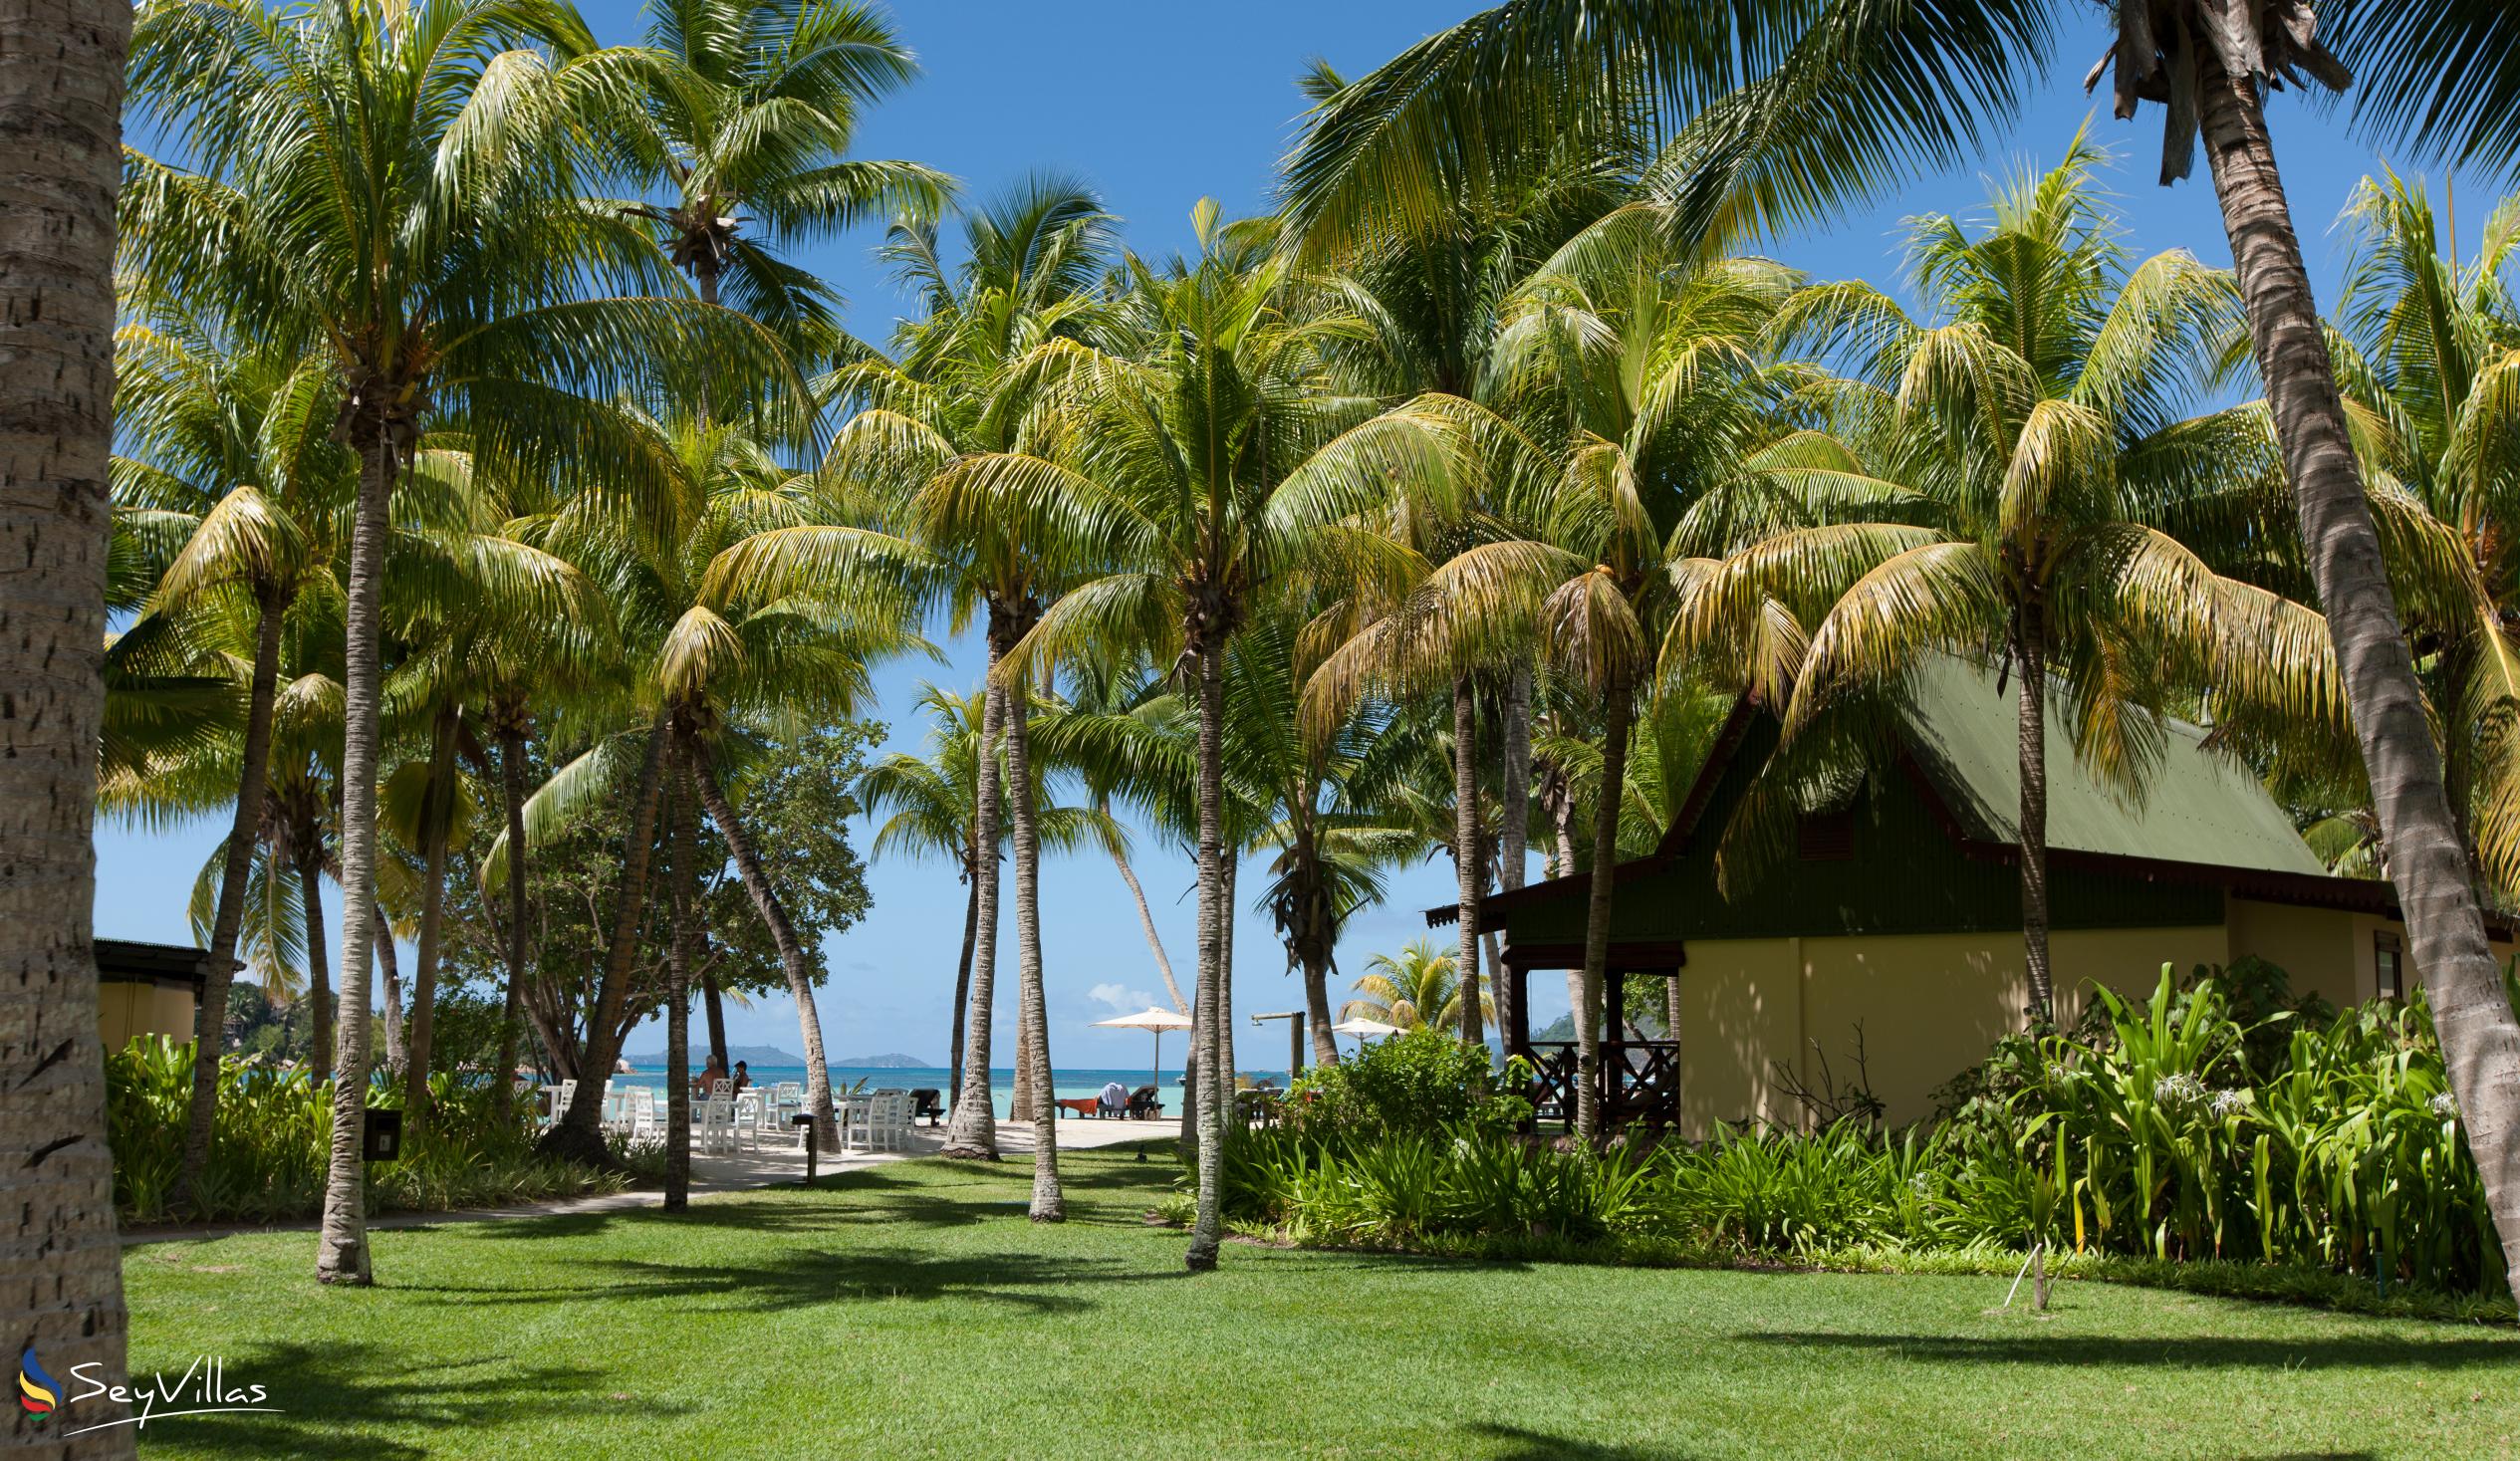 Foto 9: Paradise Sun Hotel - Aussenbereich - Praslin (Seychellen)